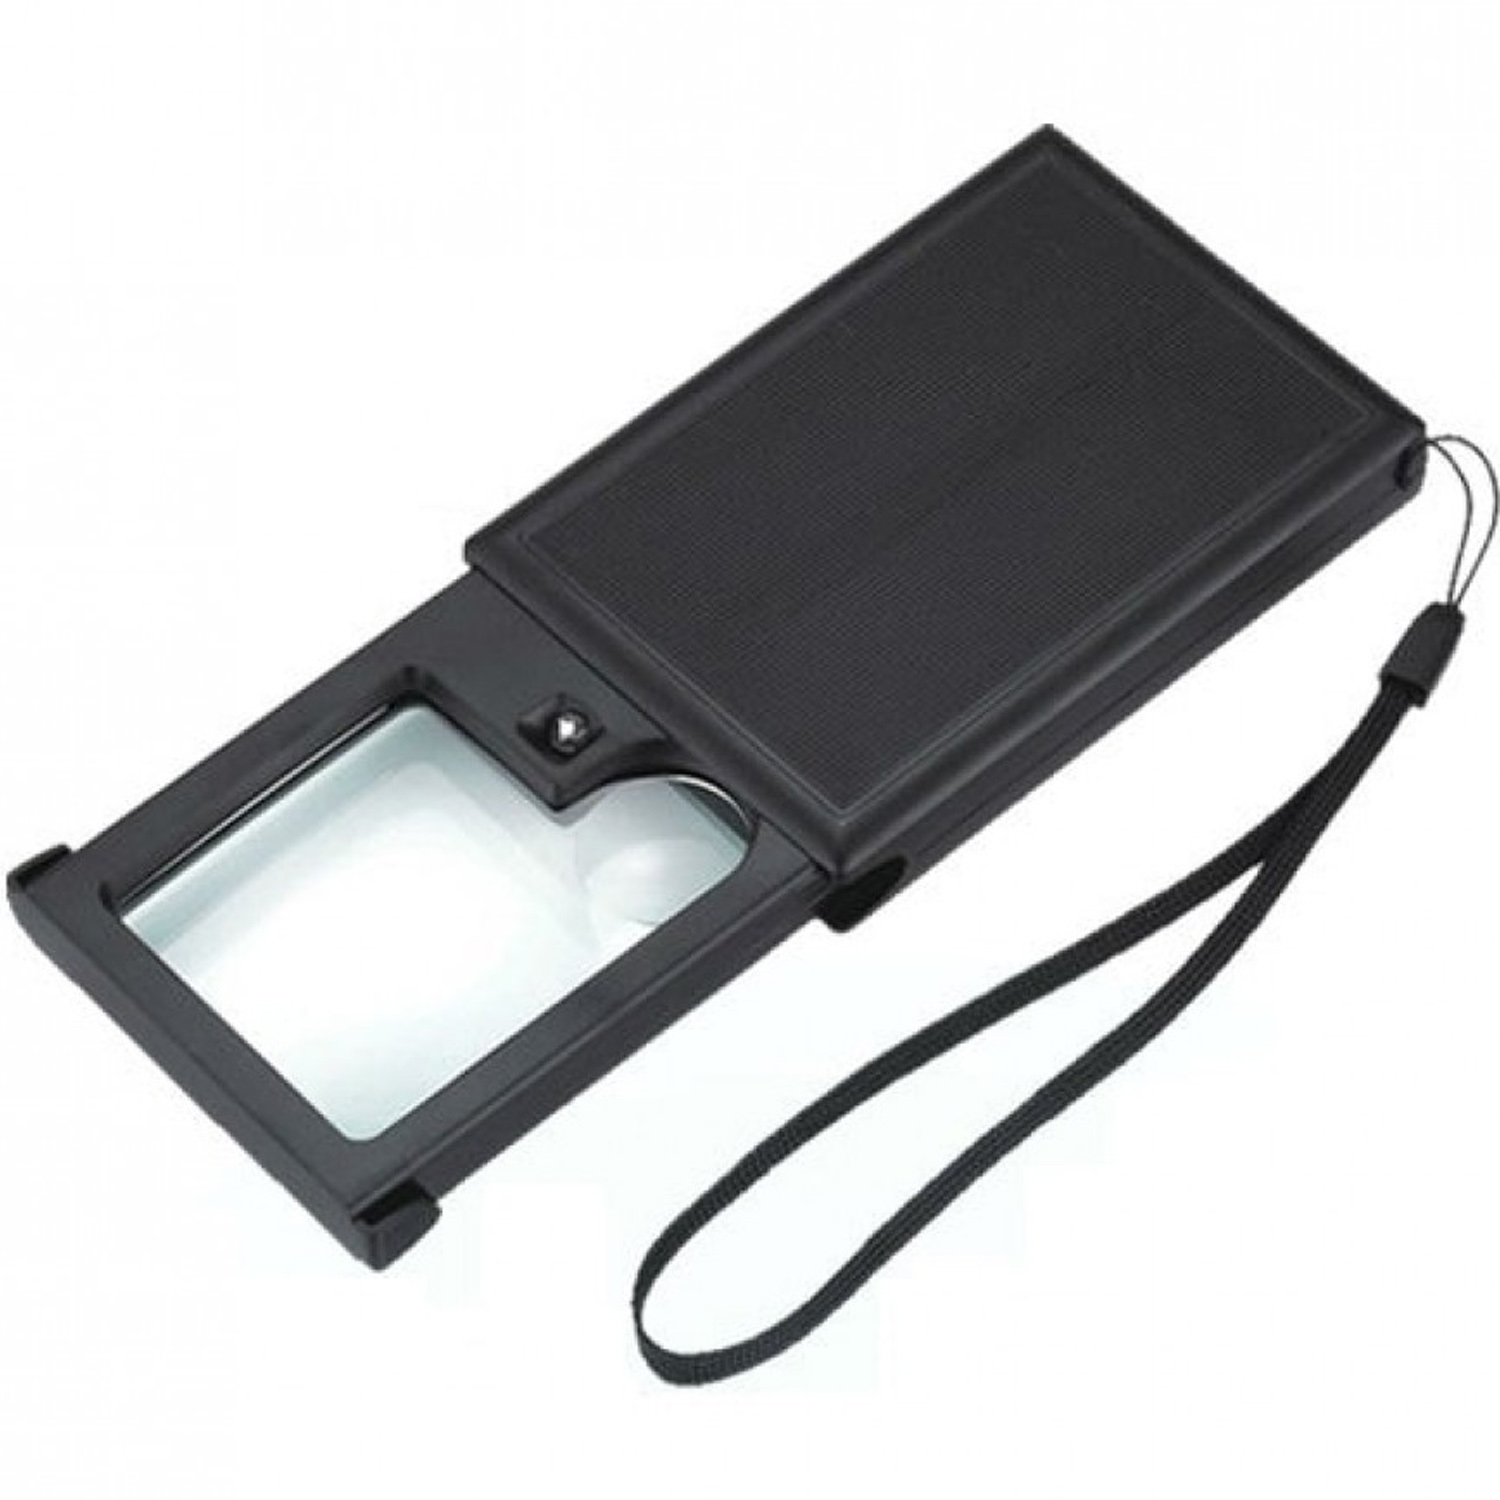 Лупа карманная MG21015 выдвижная с LED подсветкой, фото